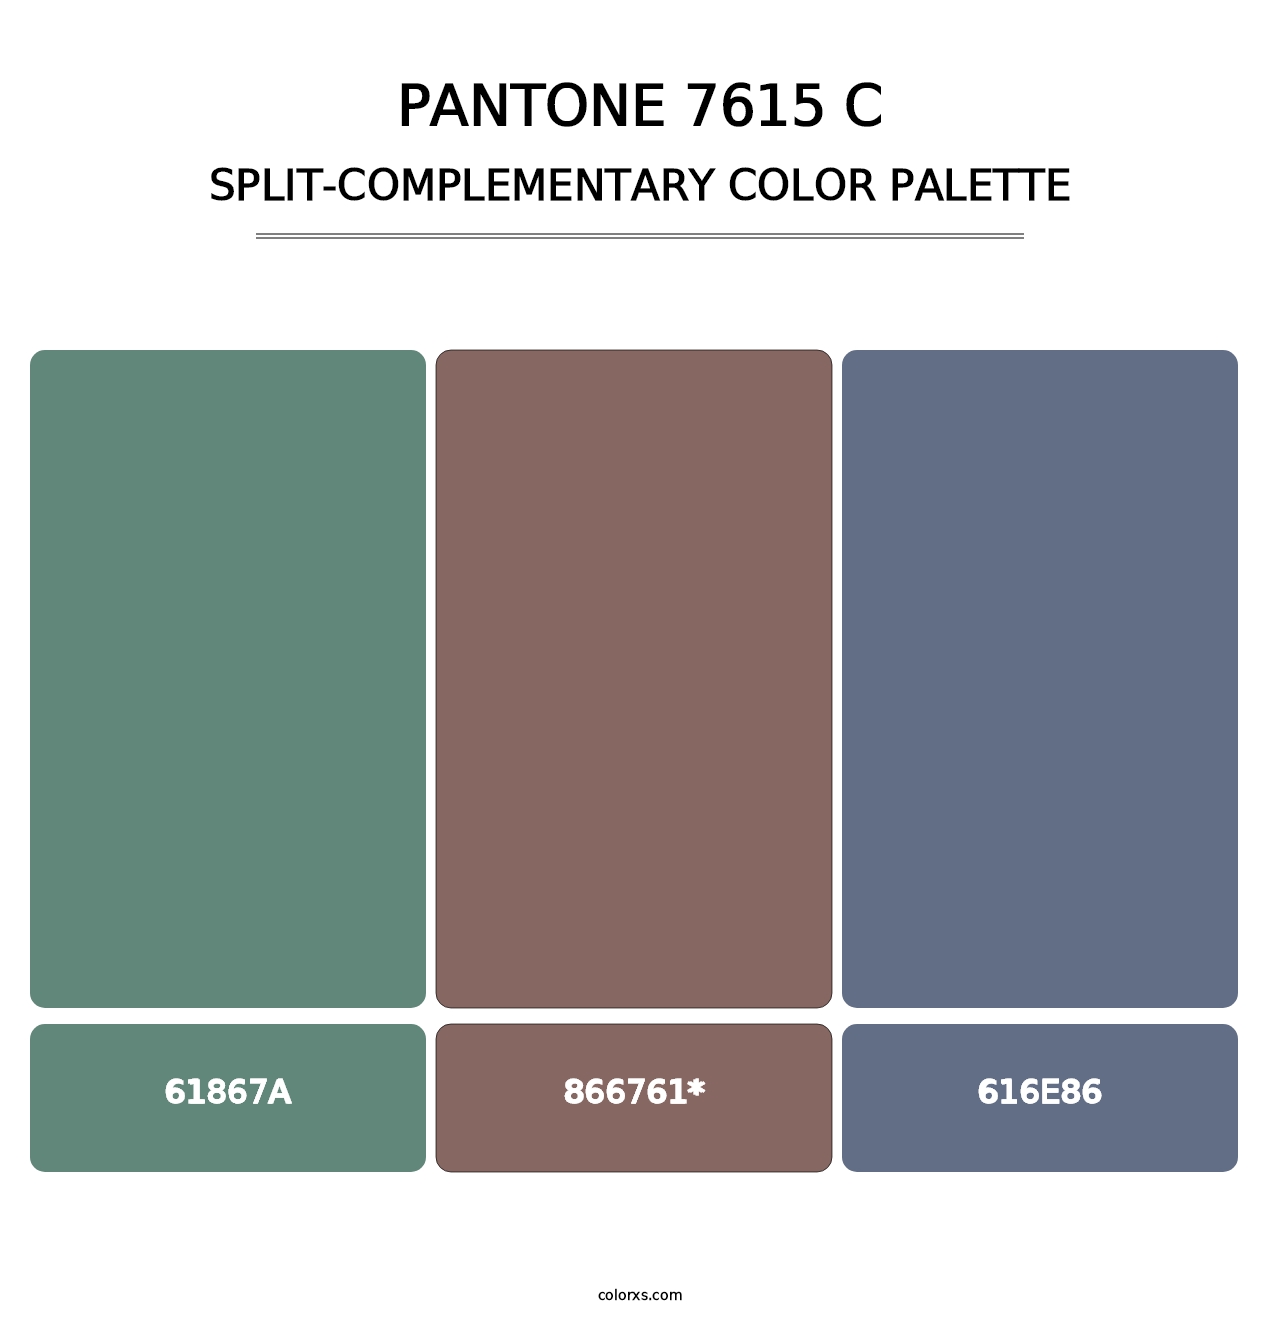 PANTONE 7615 C - Split-Complementary Color Palette